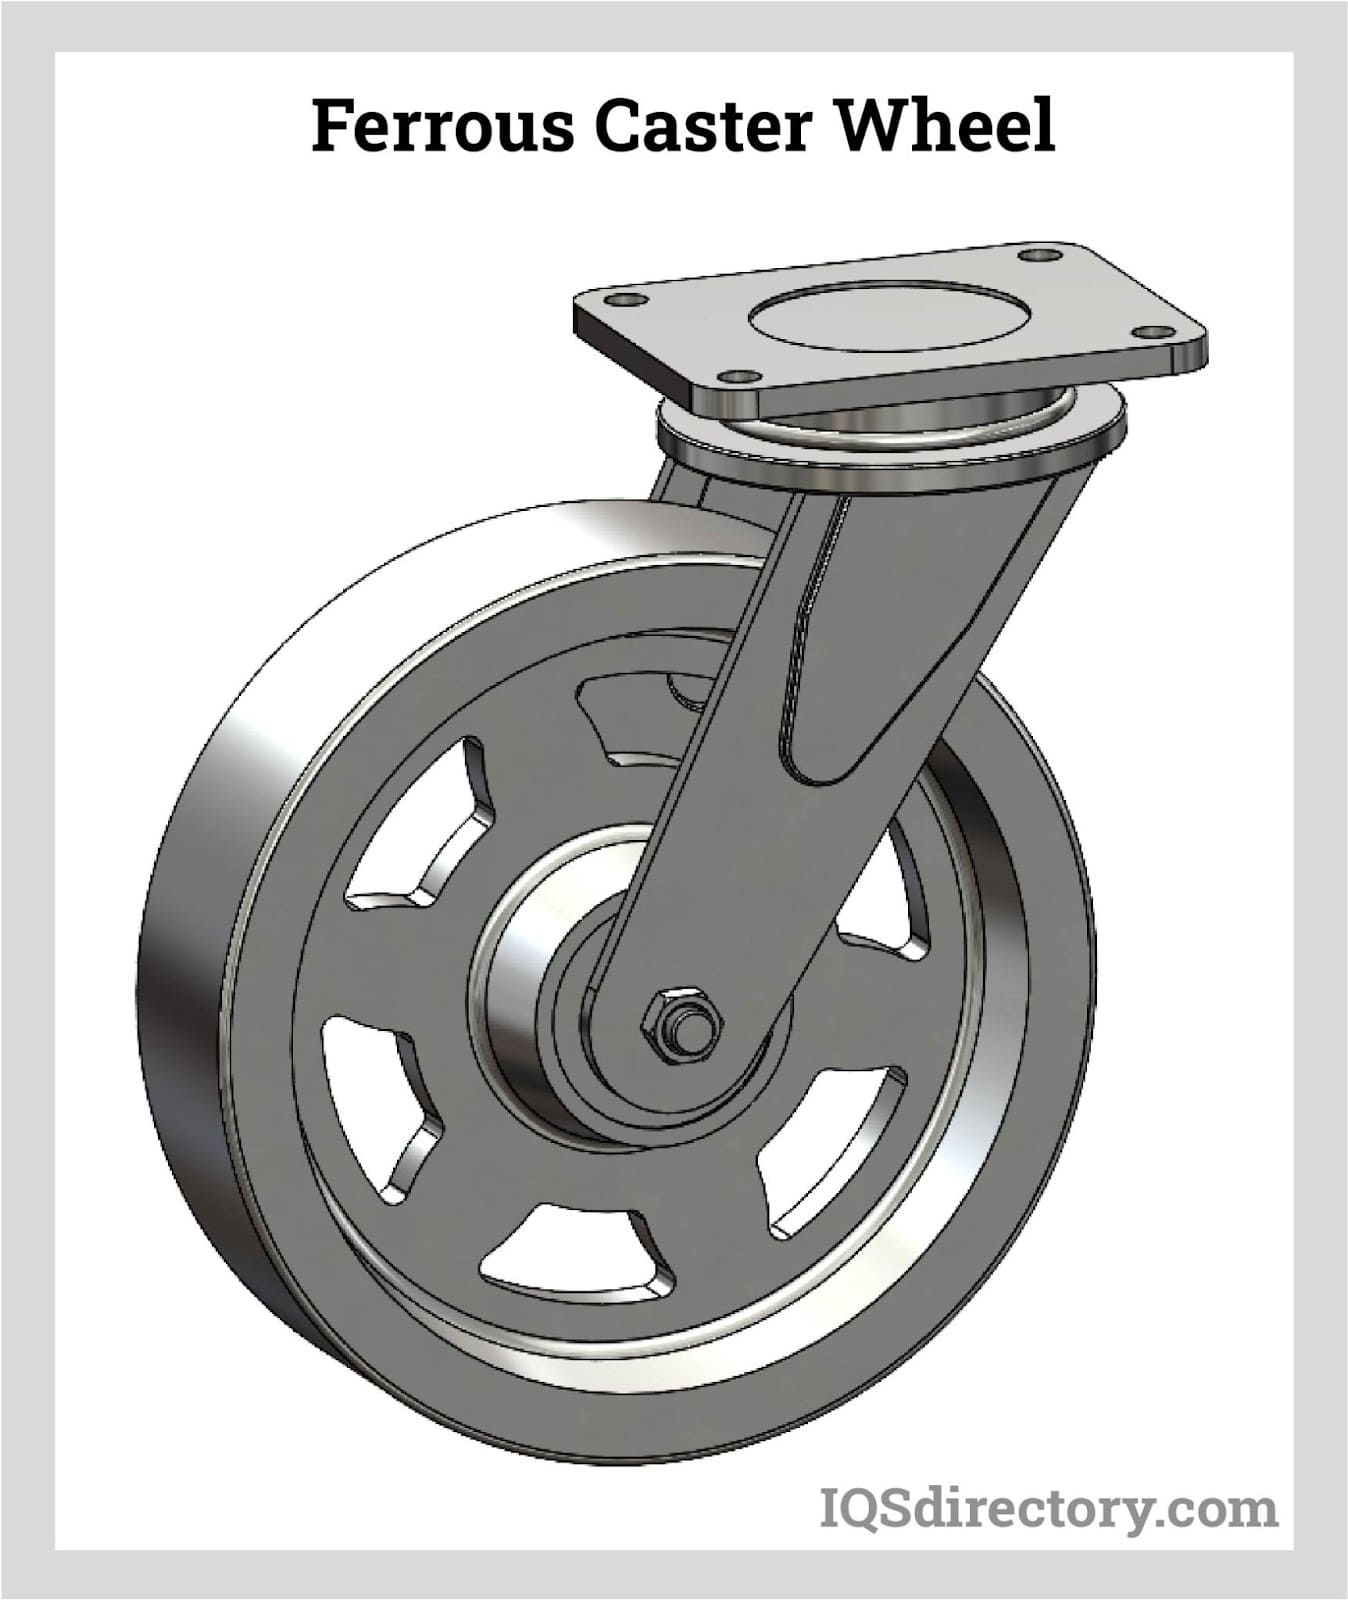 Ferrous Caster Wheel